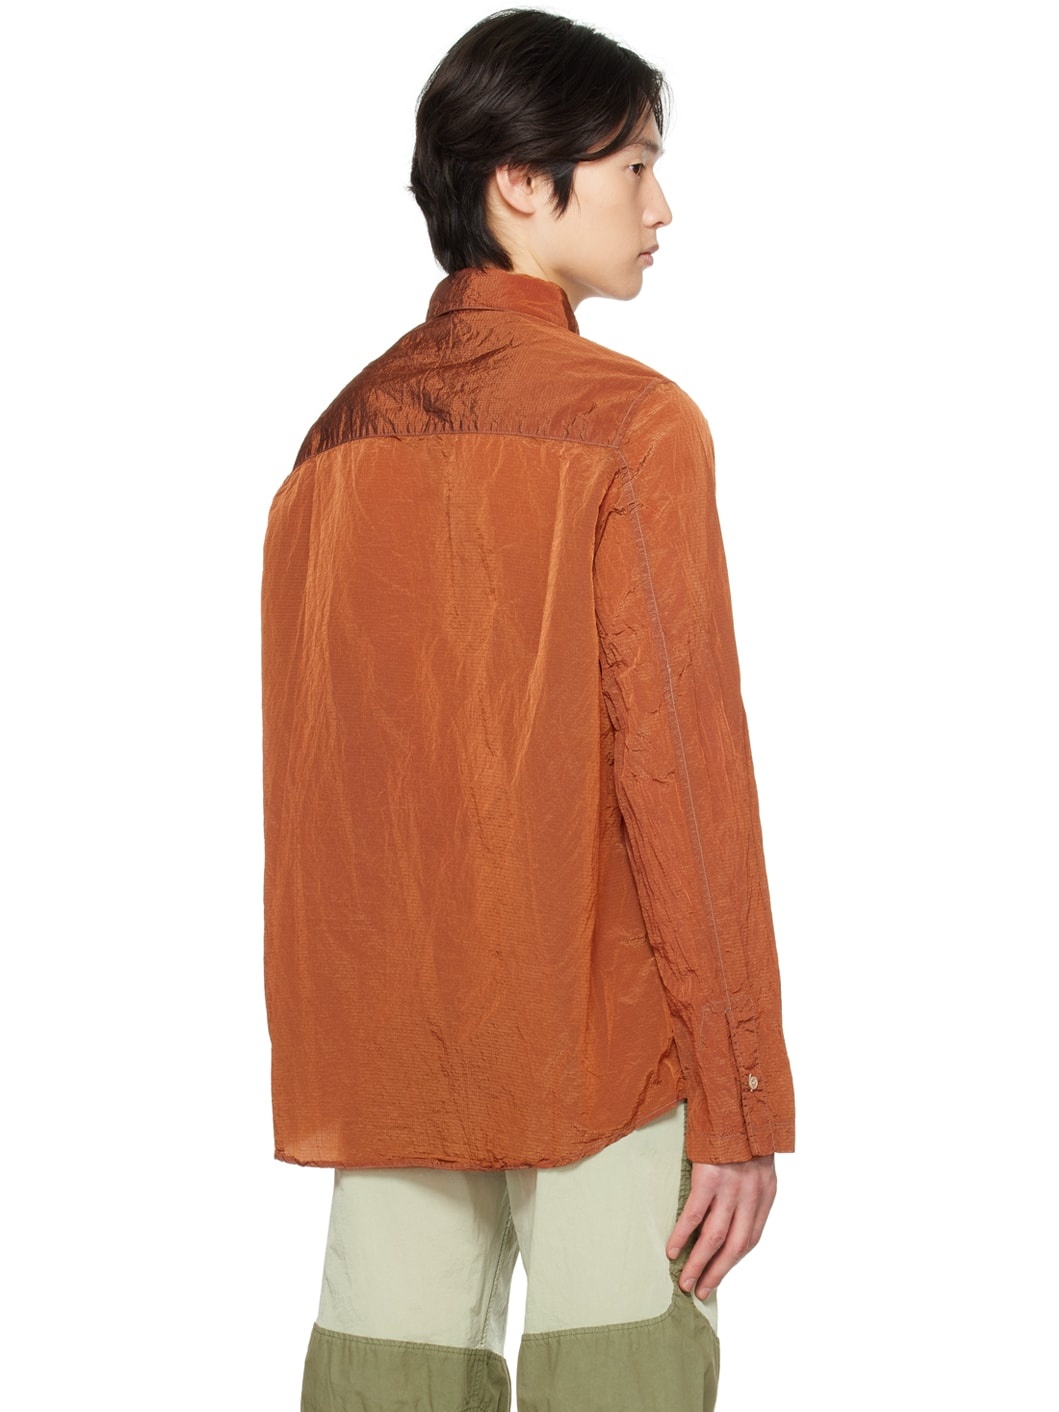 Orange Jor Shirt - 3